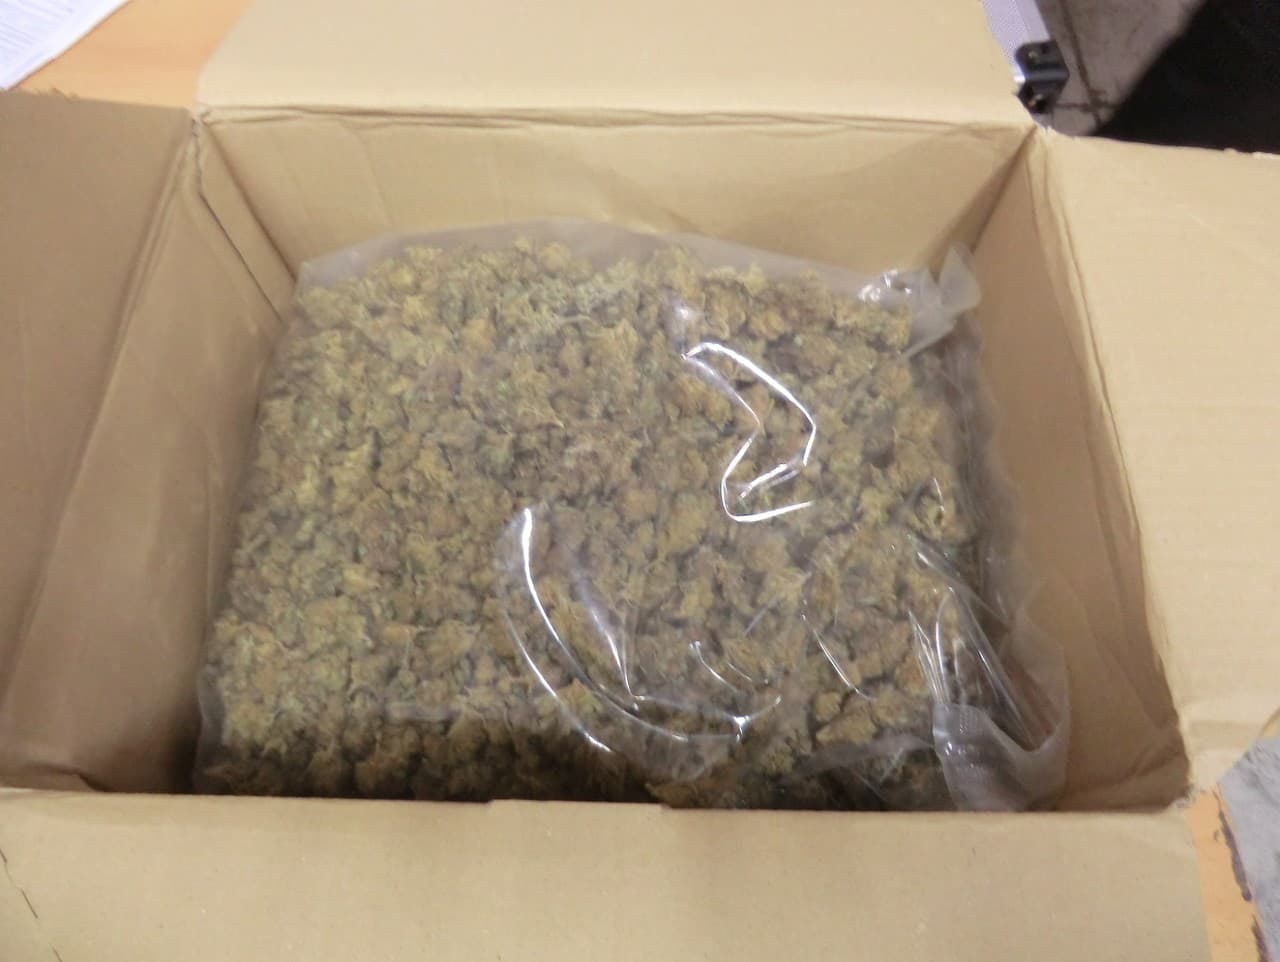 Na žilinskej vyclievacej pošte zachytili balík s vyše 500 gramami marihuany